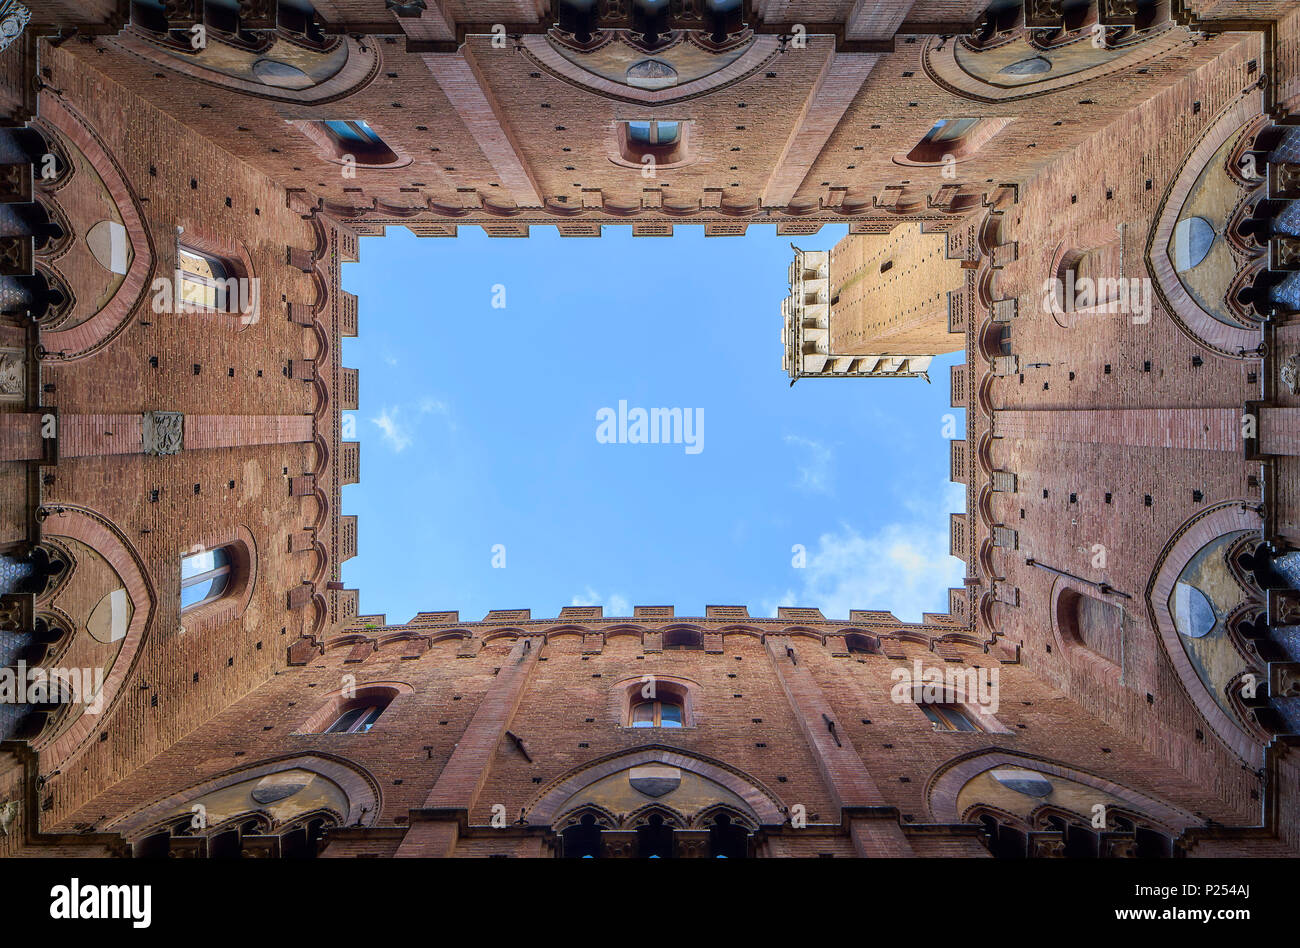 Palazzo Pubblico, Siena, Tuscany, Italy Stock Photo